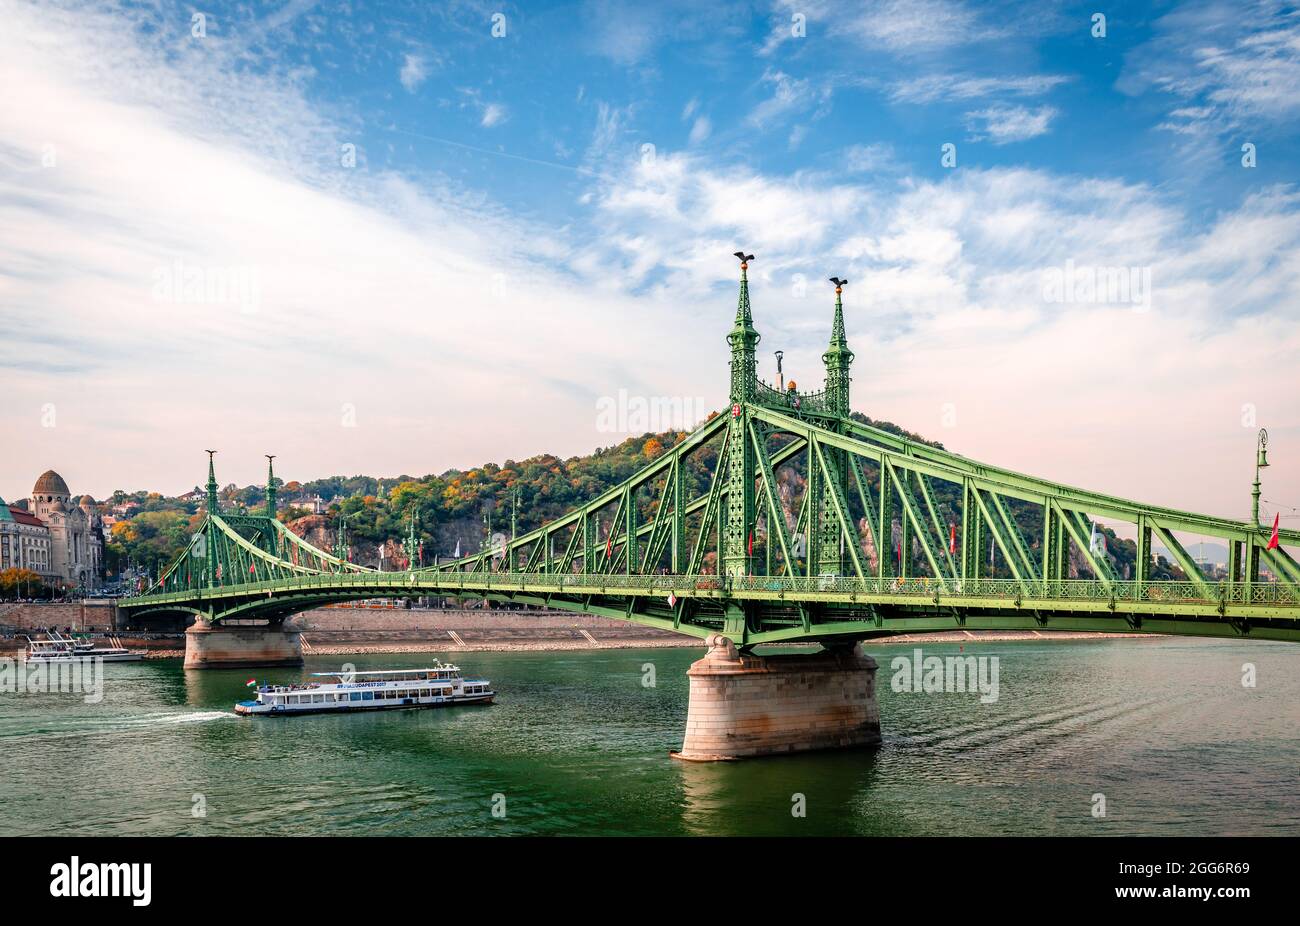 Τhe Liberty (or Freedom) Bridge, in Budapest, Hungary that connects Buda and Pest across the River Danube. The Gellért Hill is in the background. Stock Photo